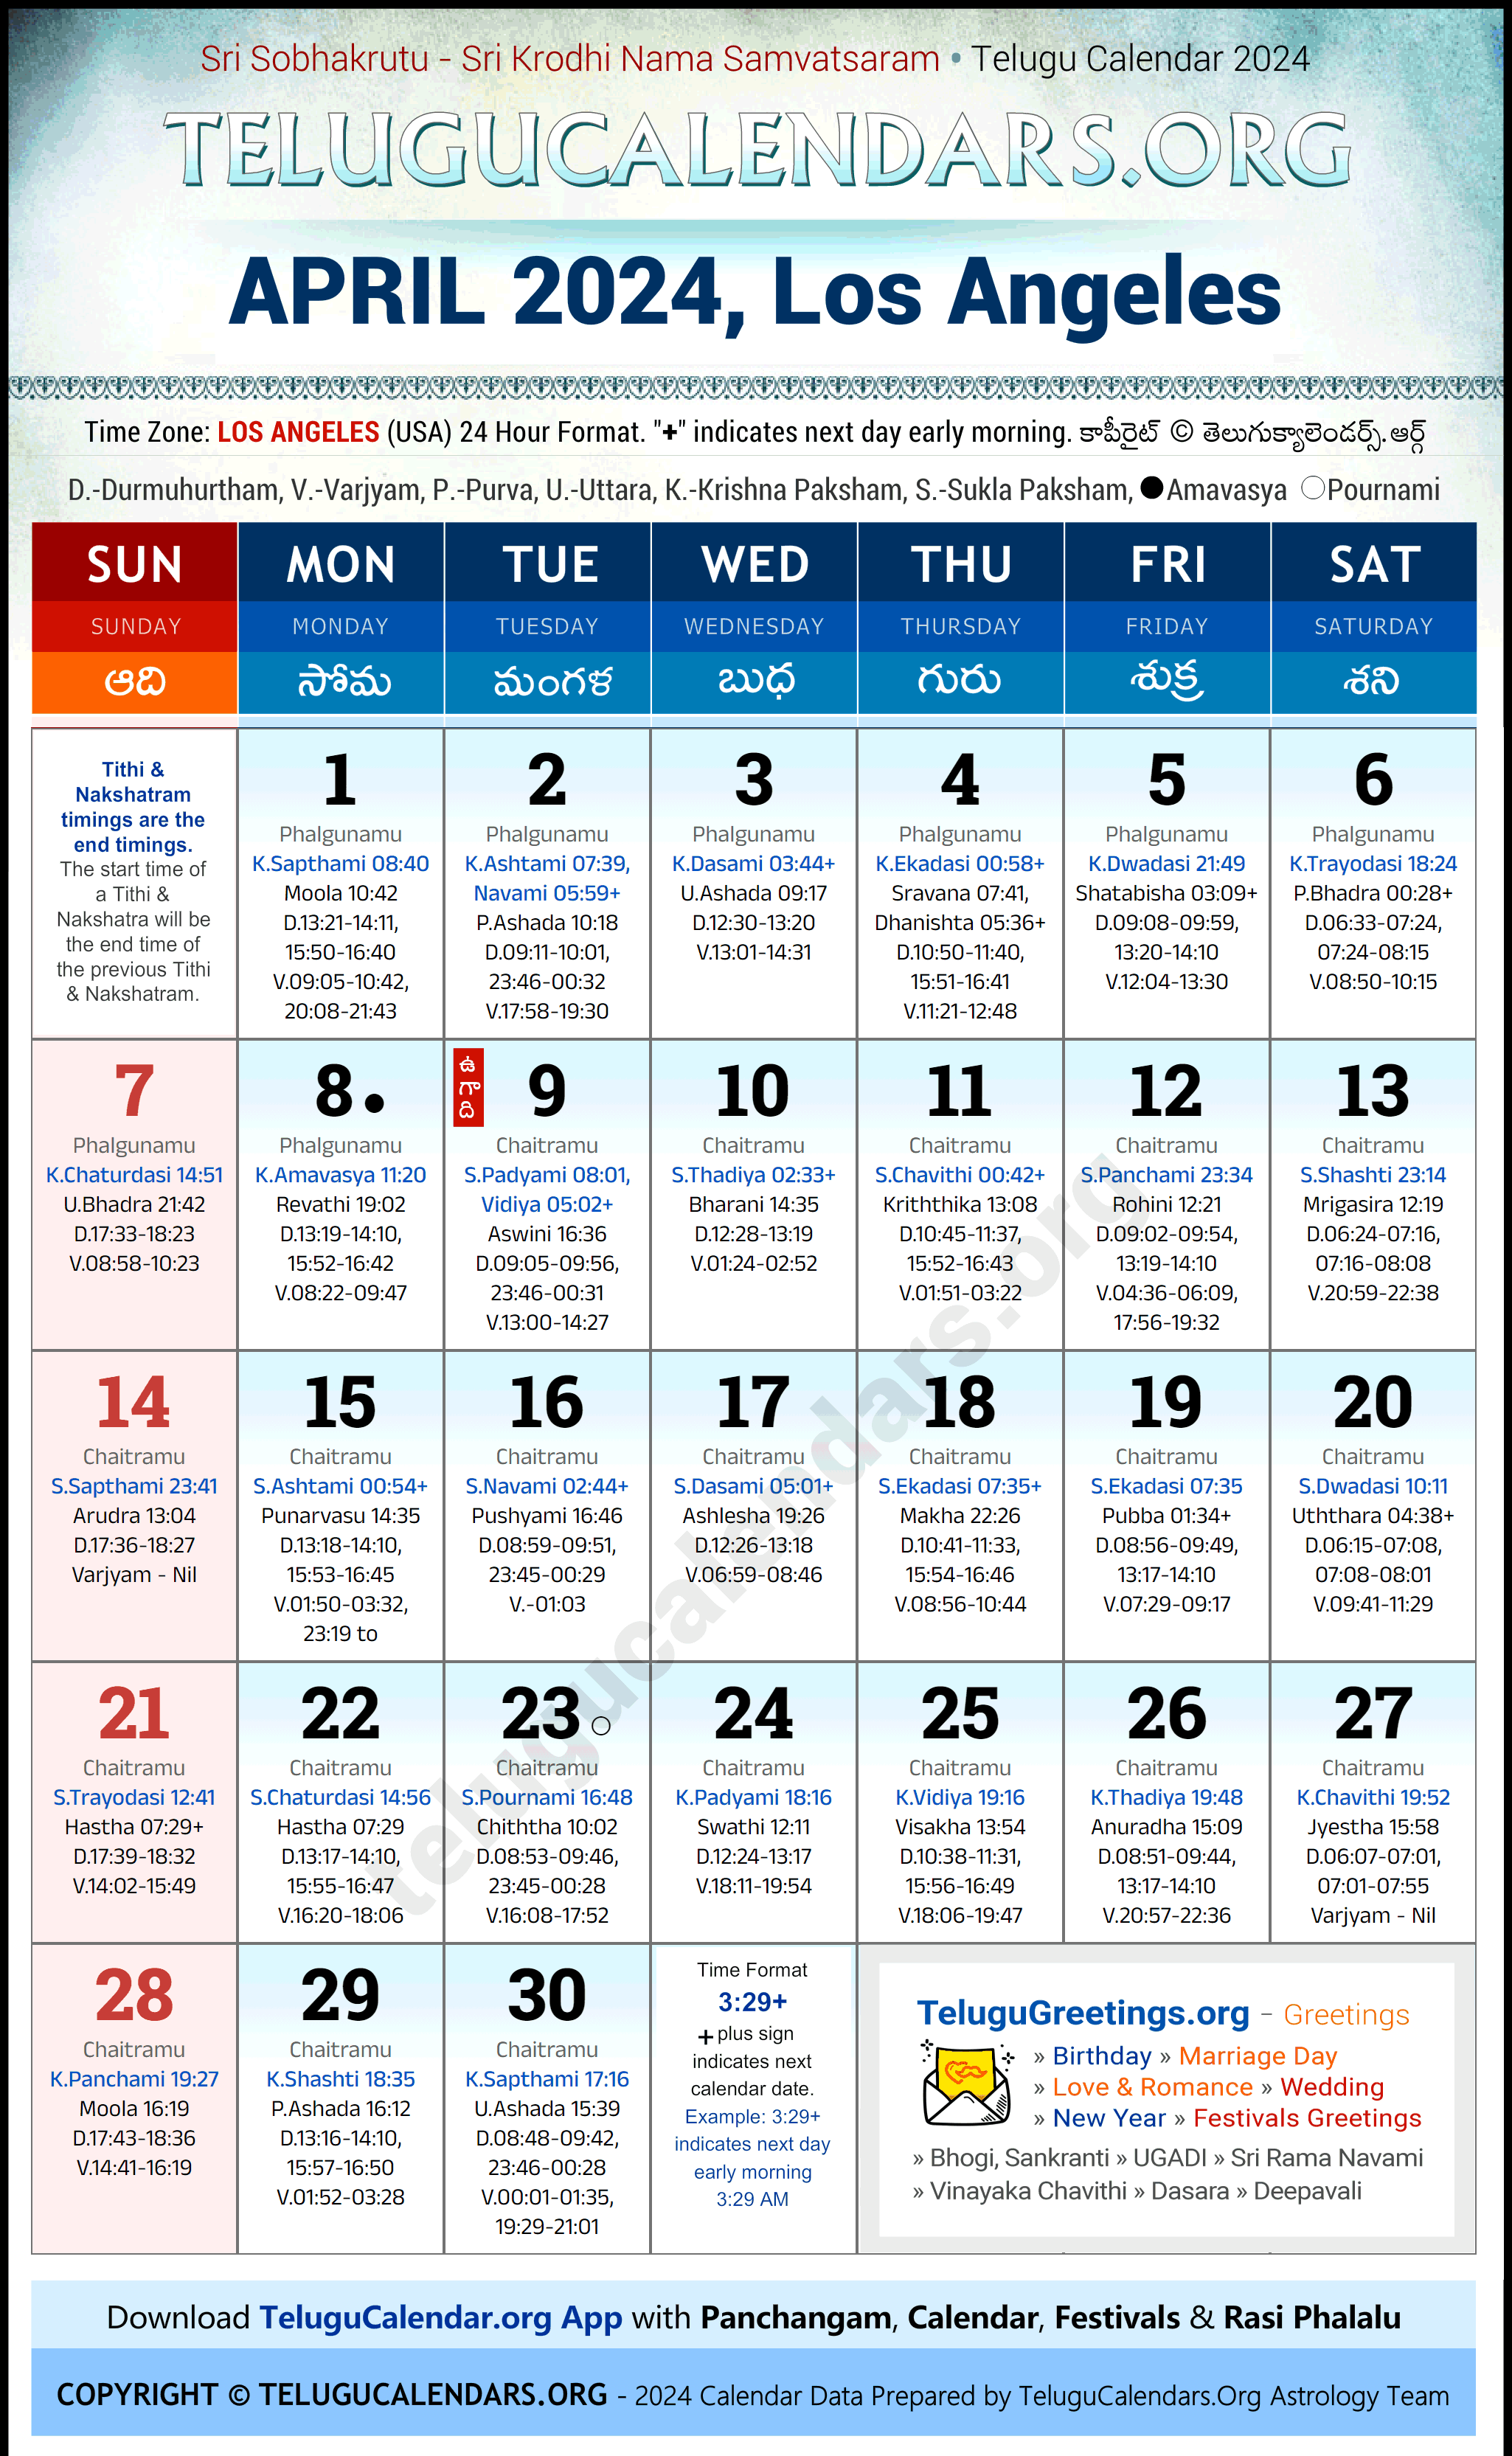 Telugu Calendar 2024 April Festivals for Los Angeles